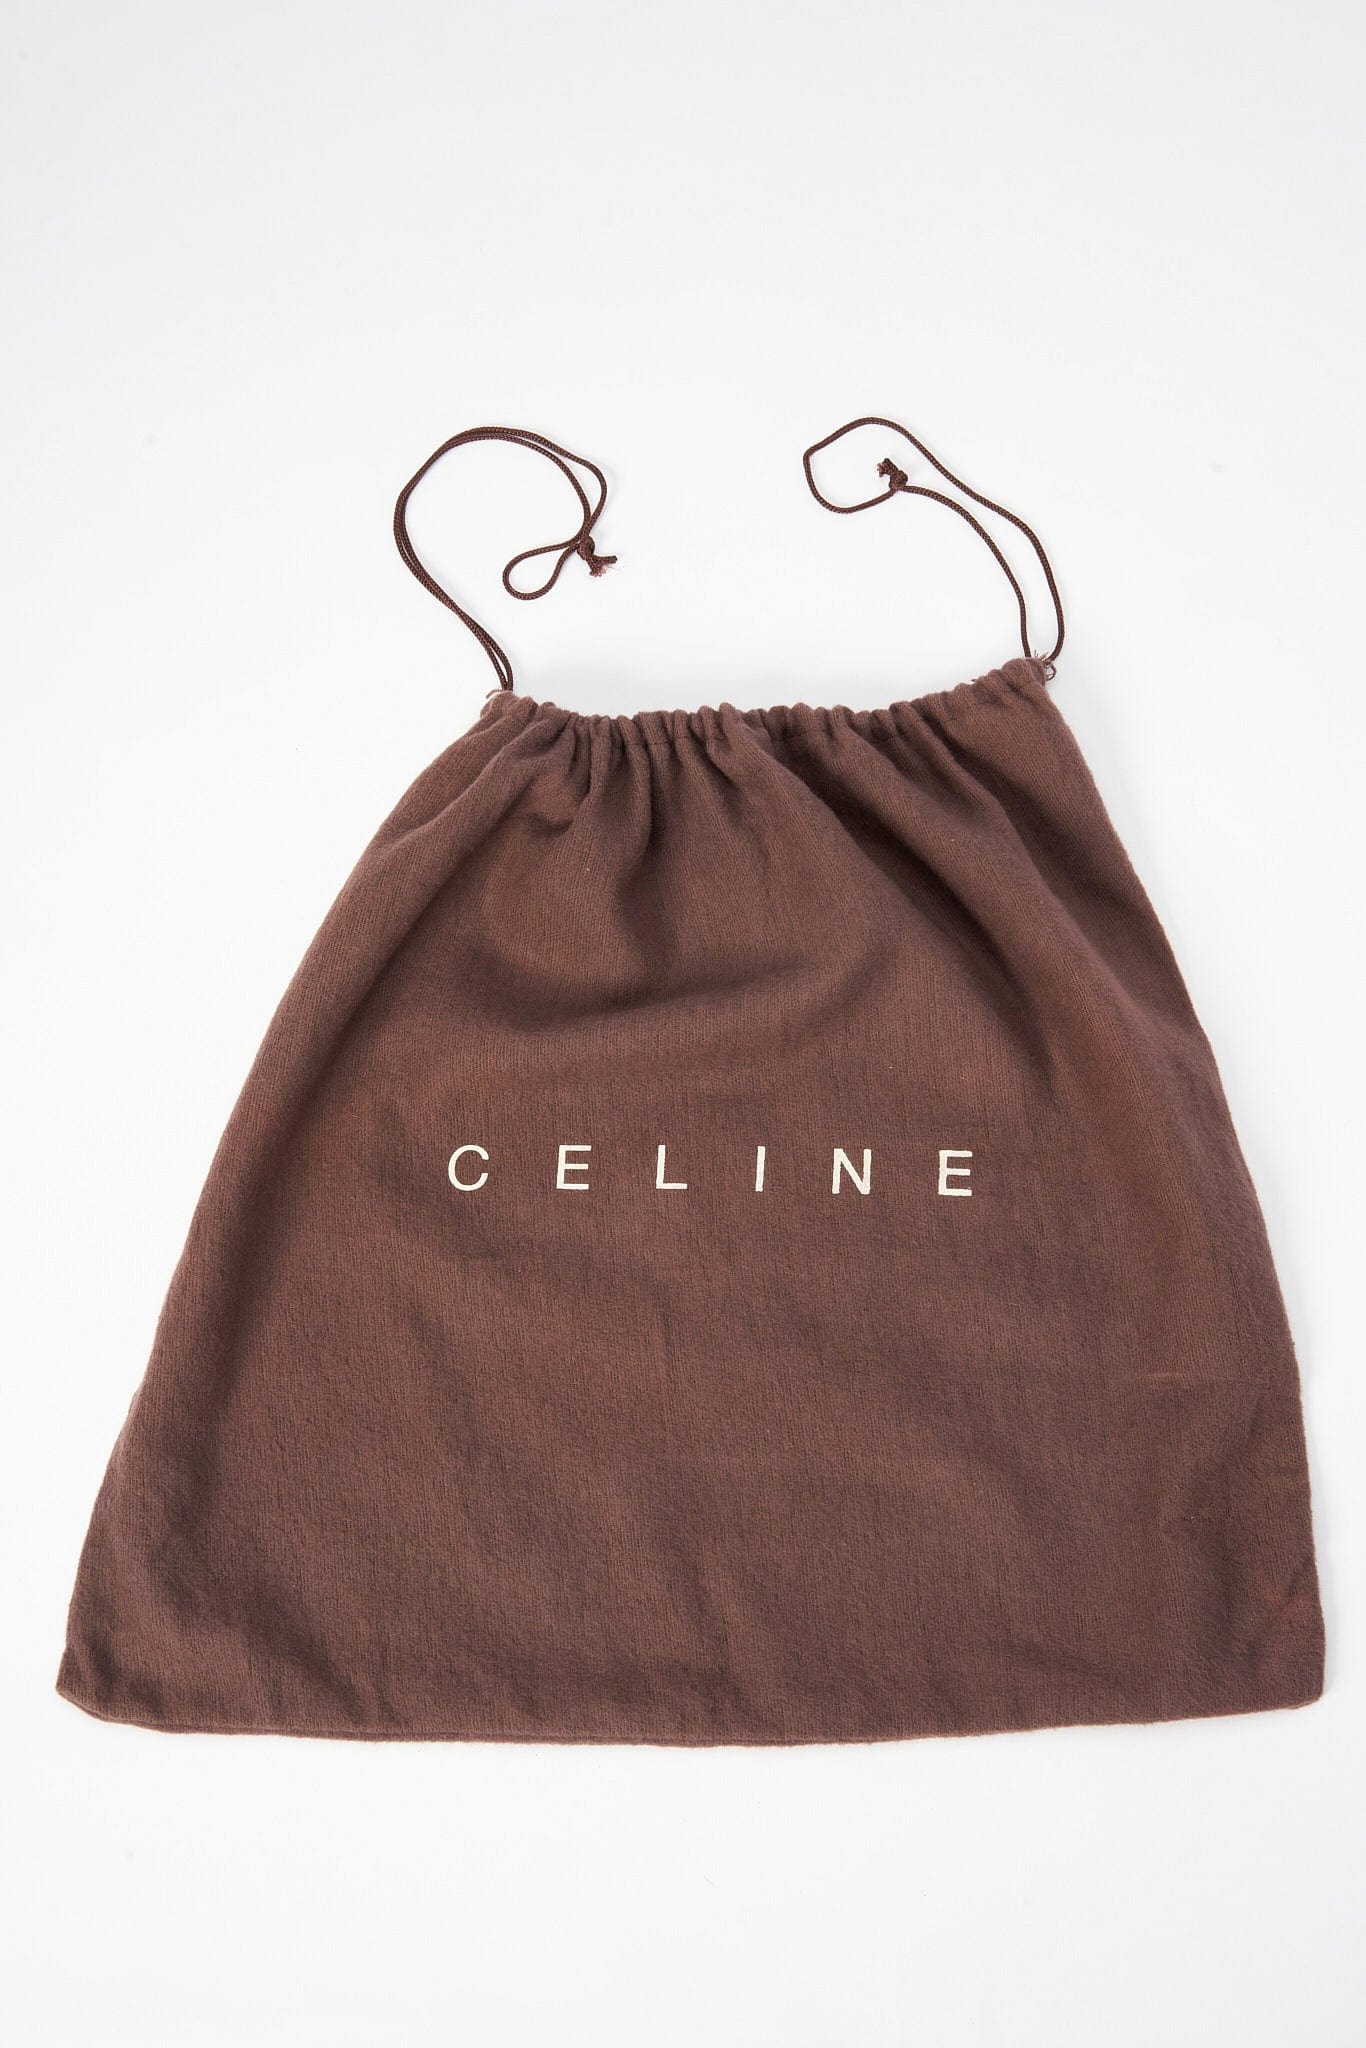 Vintage Celine logo Bag - Brown